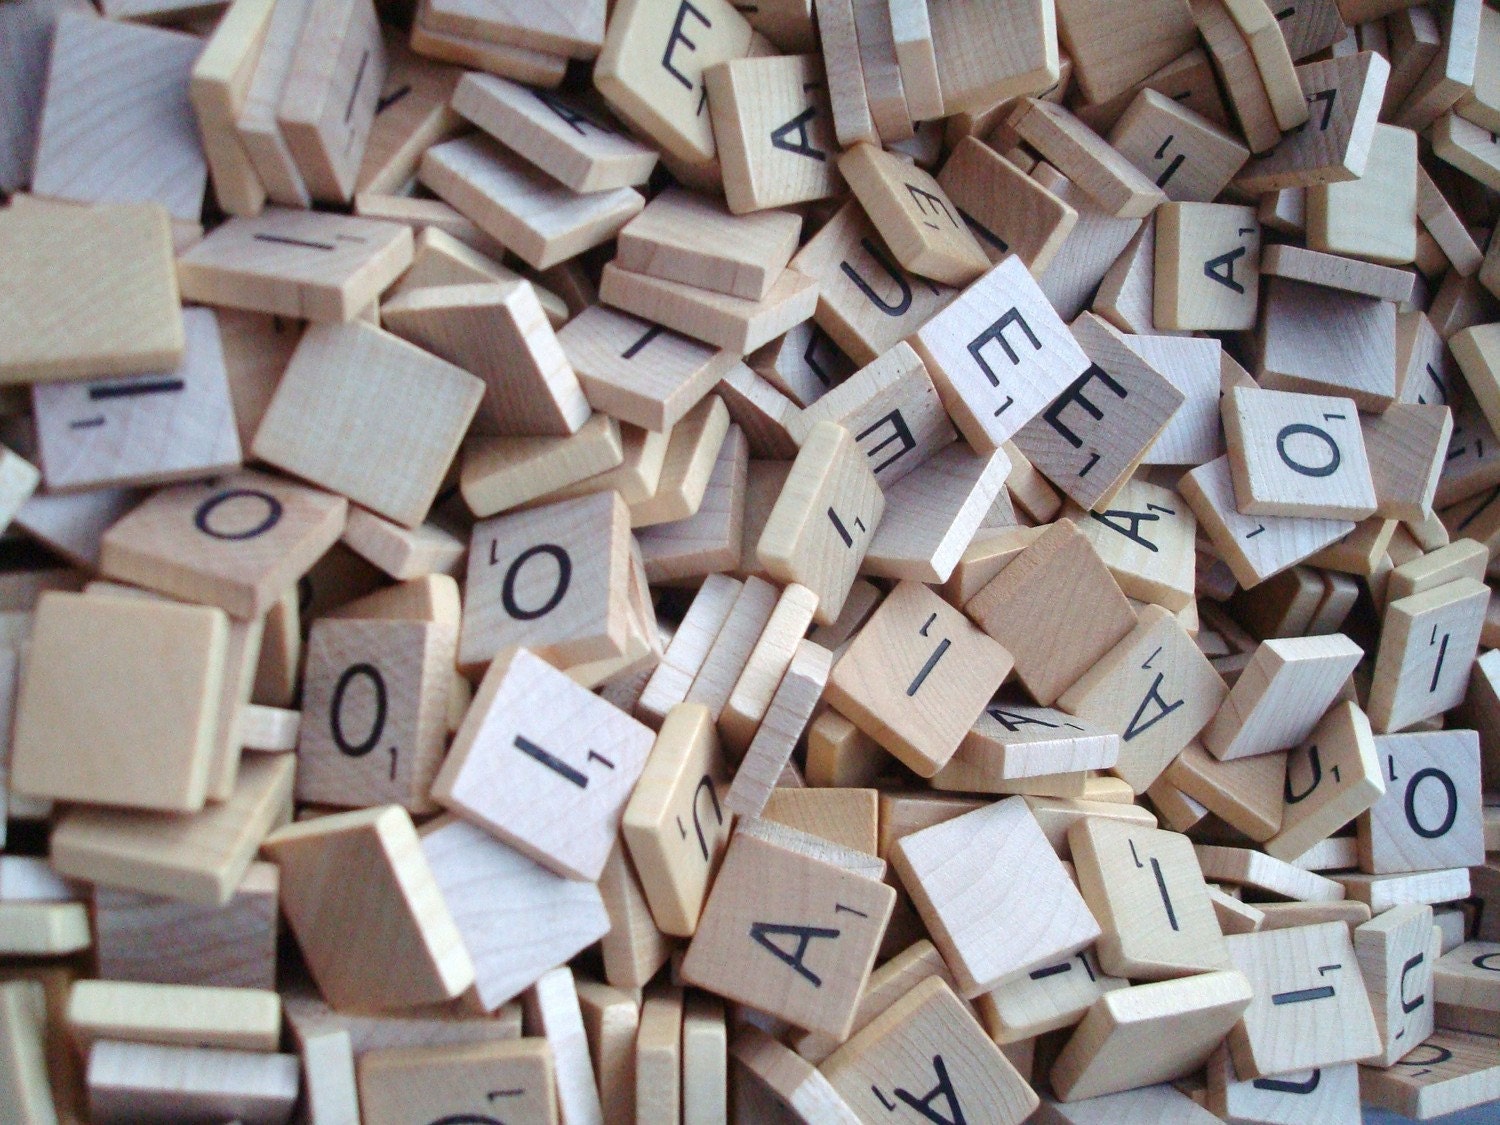 Scrabble Tile Vowels lot of 100 plus